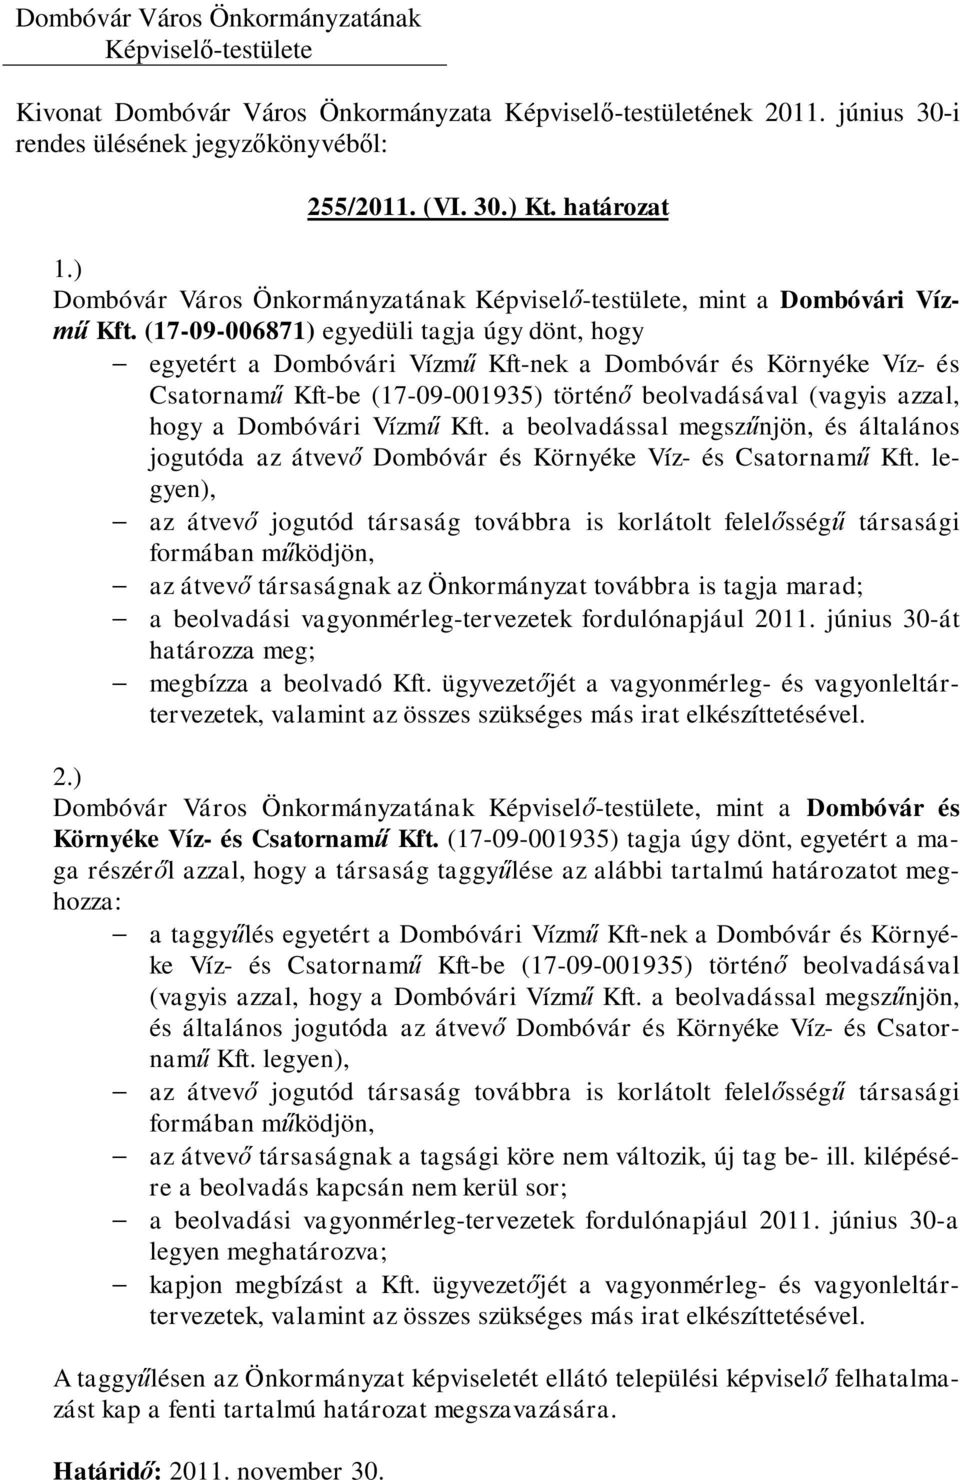 (17-09-006871) egyedüli tagja úgy dönt, hogy - egyetért a Dombóvári Vízmű Kft-nek a Dombóvár és Környéke Víz- és Csatornamű Kft-be (17-09-001935) történő beolvadásával (vagyis azzal, hogy a Dombóvári